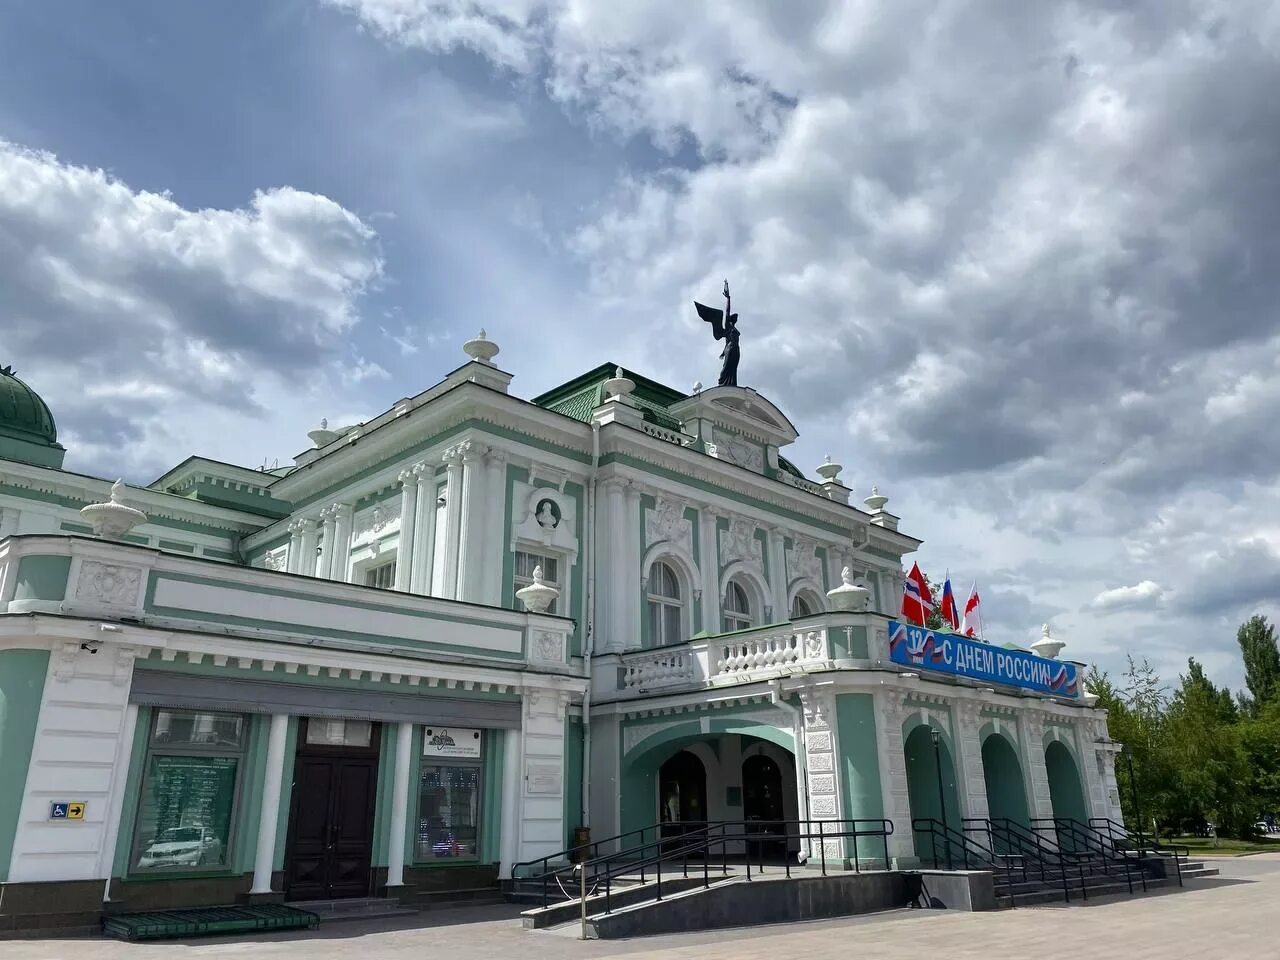 Омский Академический театр драмы Омск. Омский драматический театр 1874 года постройки. Омск театр белая столица.